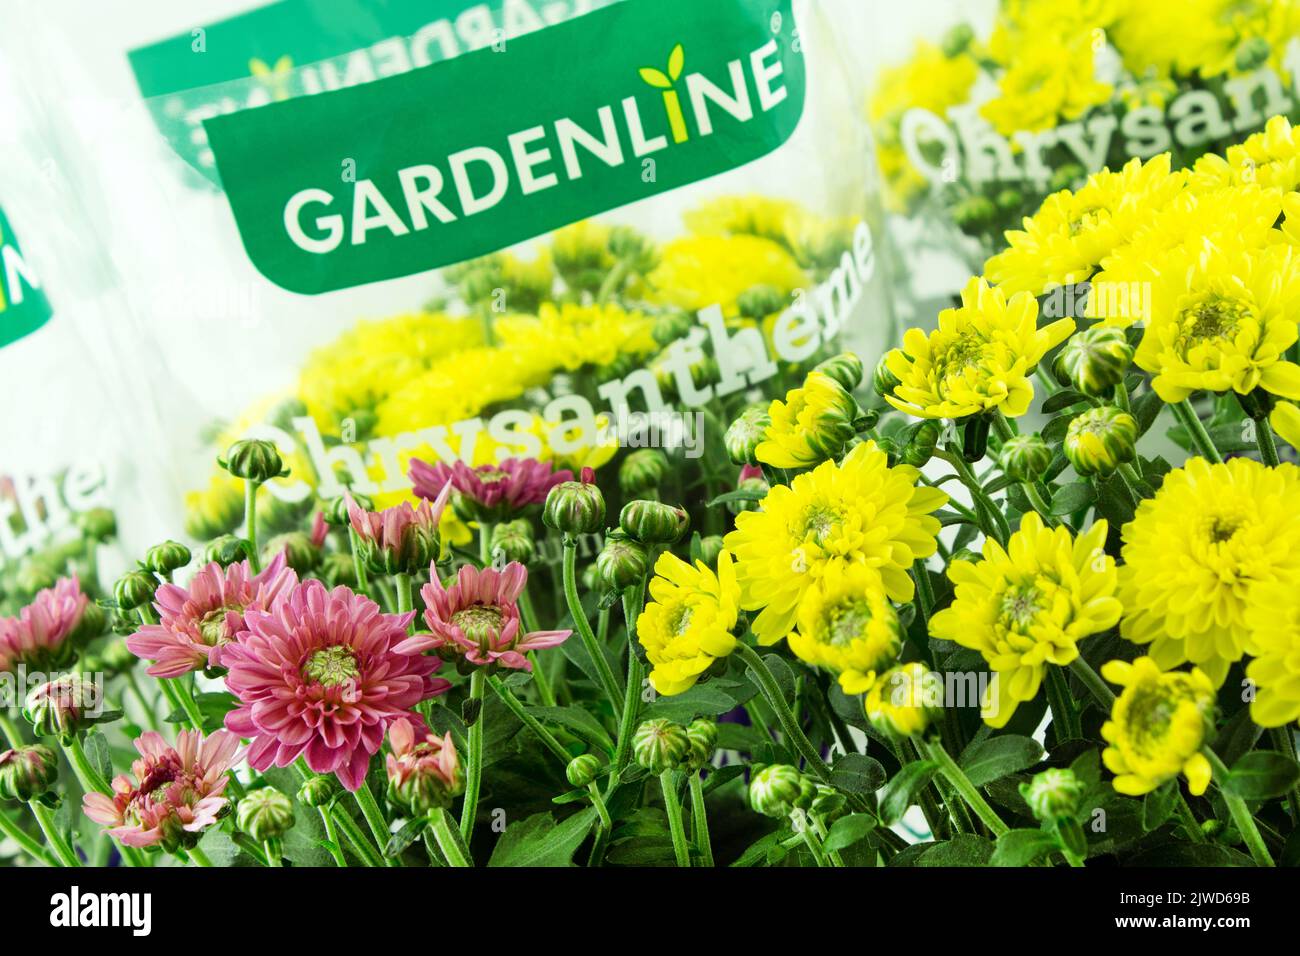 Gelbe Chrysanthemen von Gardenline im Topf mit Verpackung Stock Photo